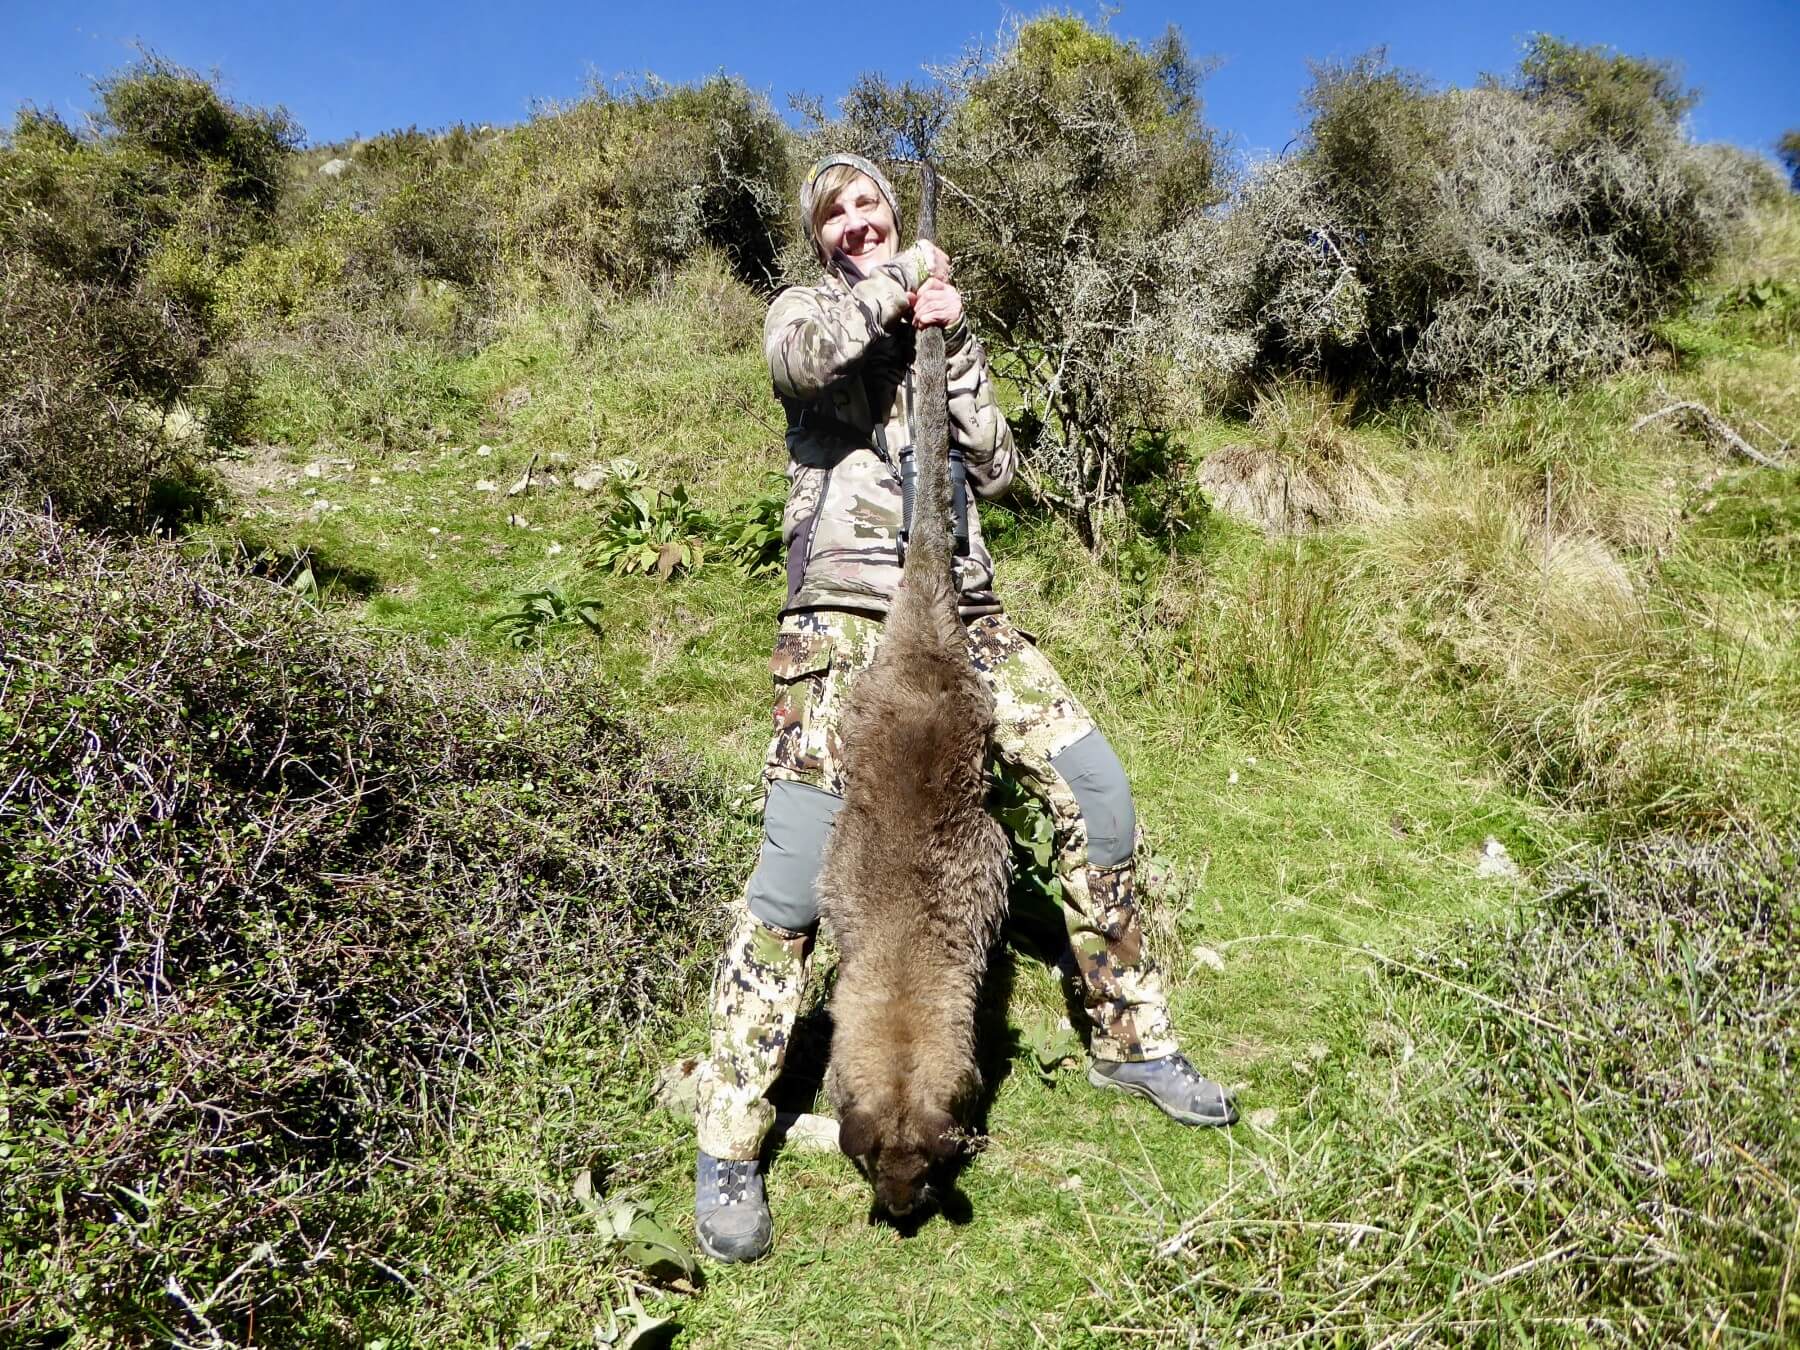 varmint hunting trips